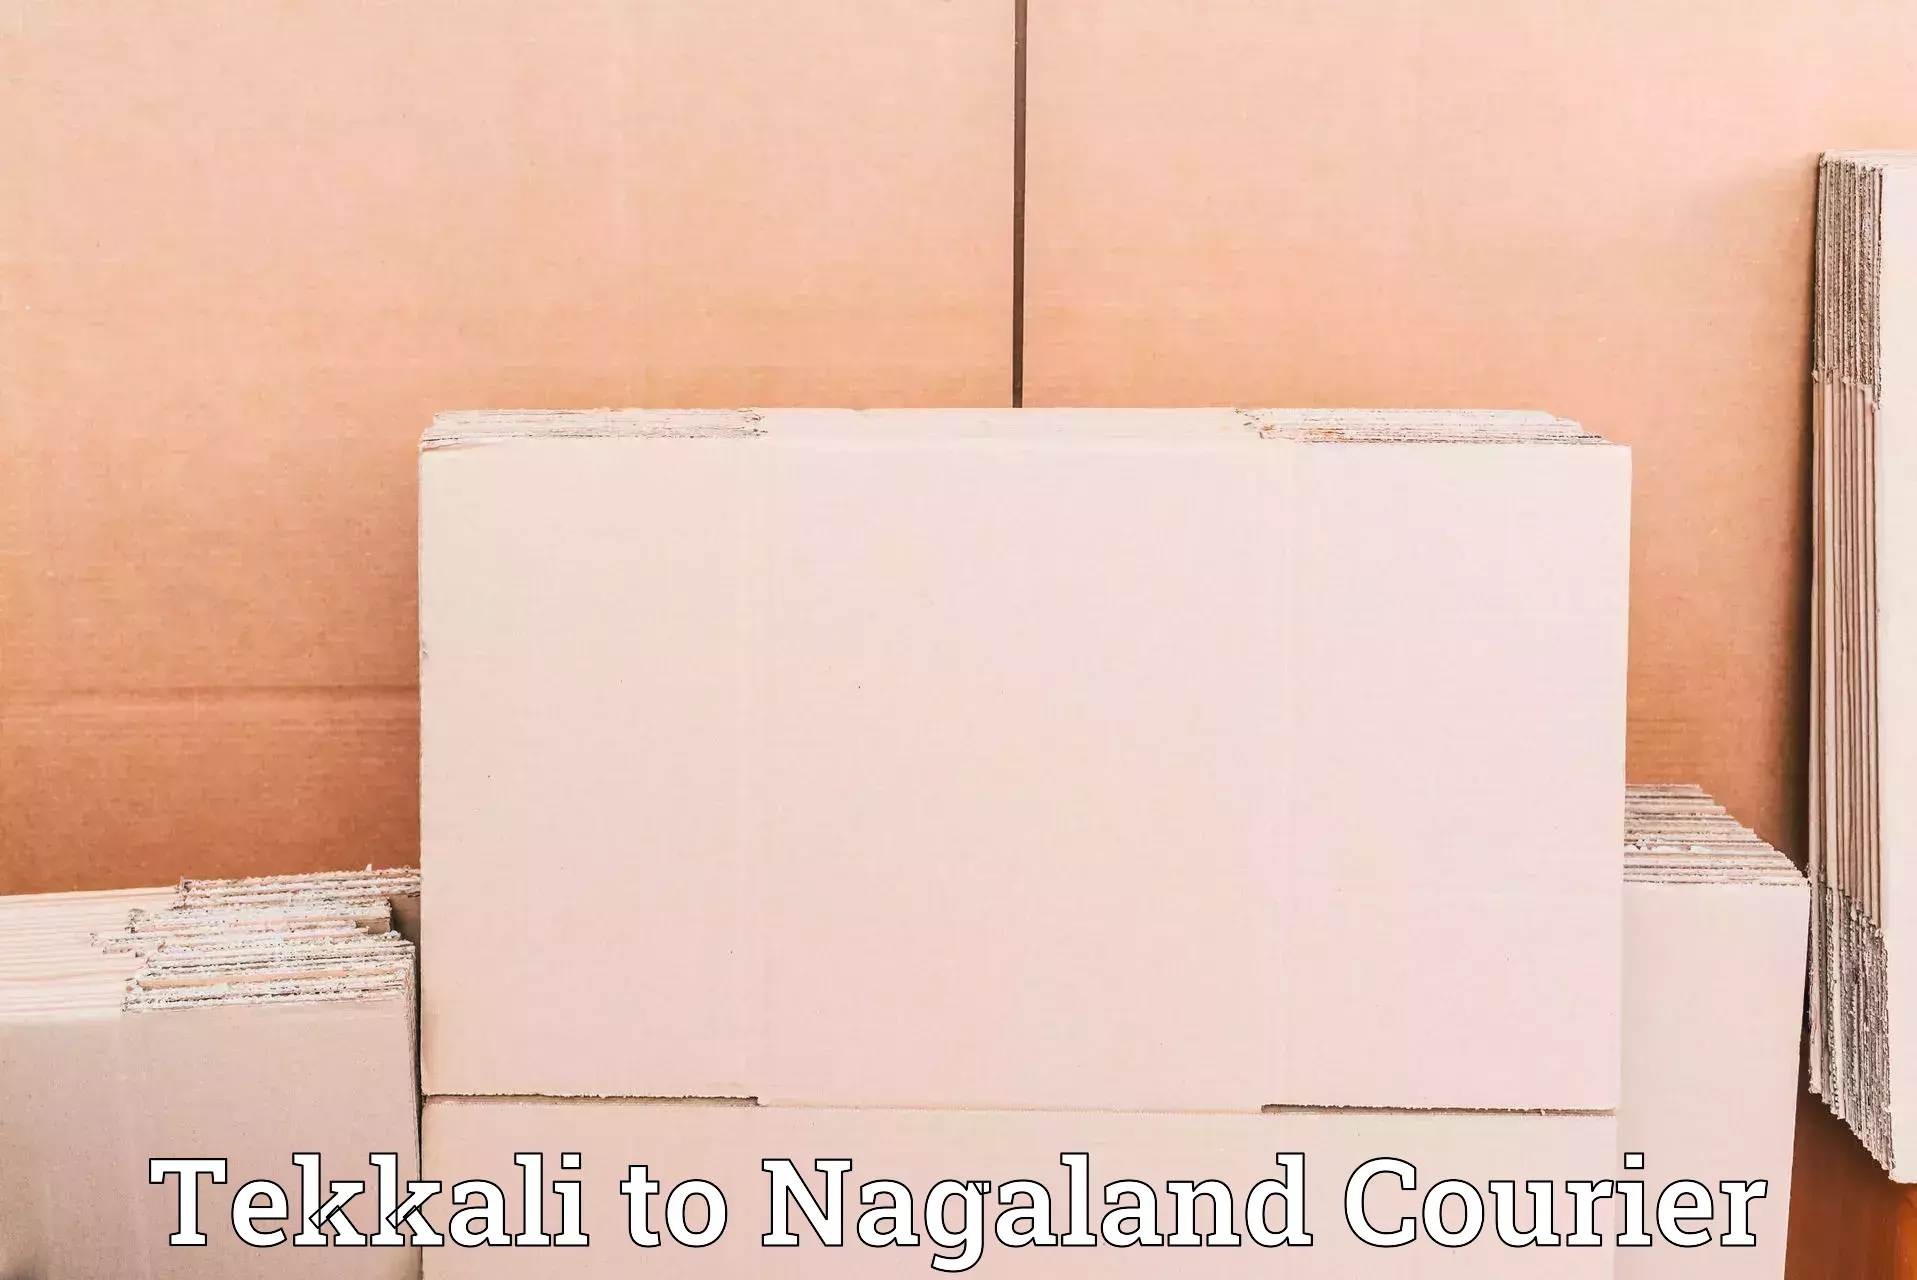 International parcel service in Tekkali to Longleng